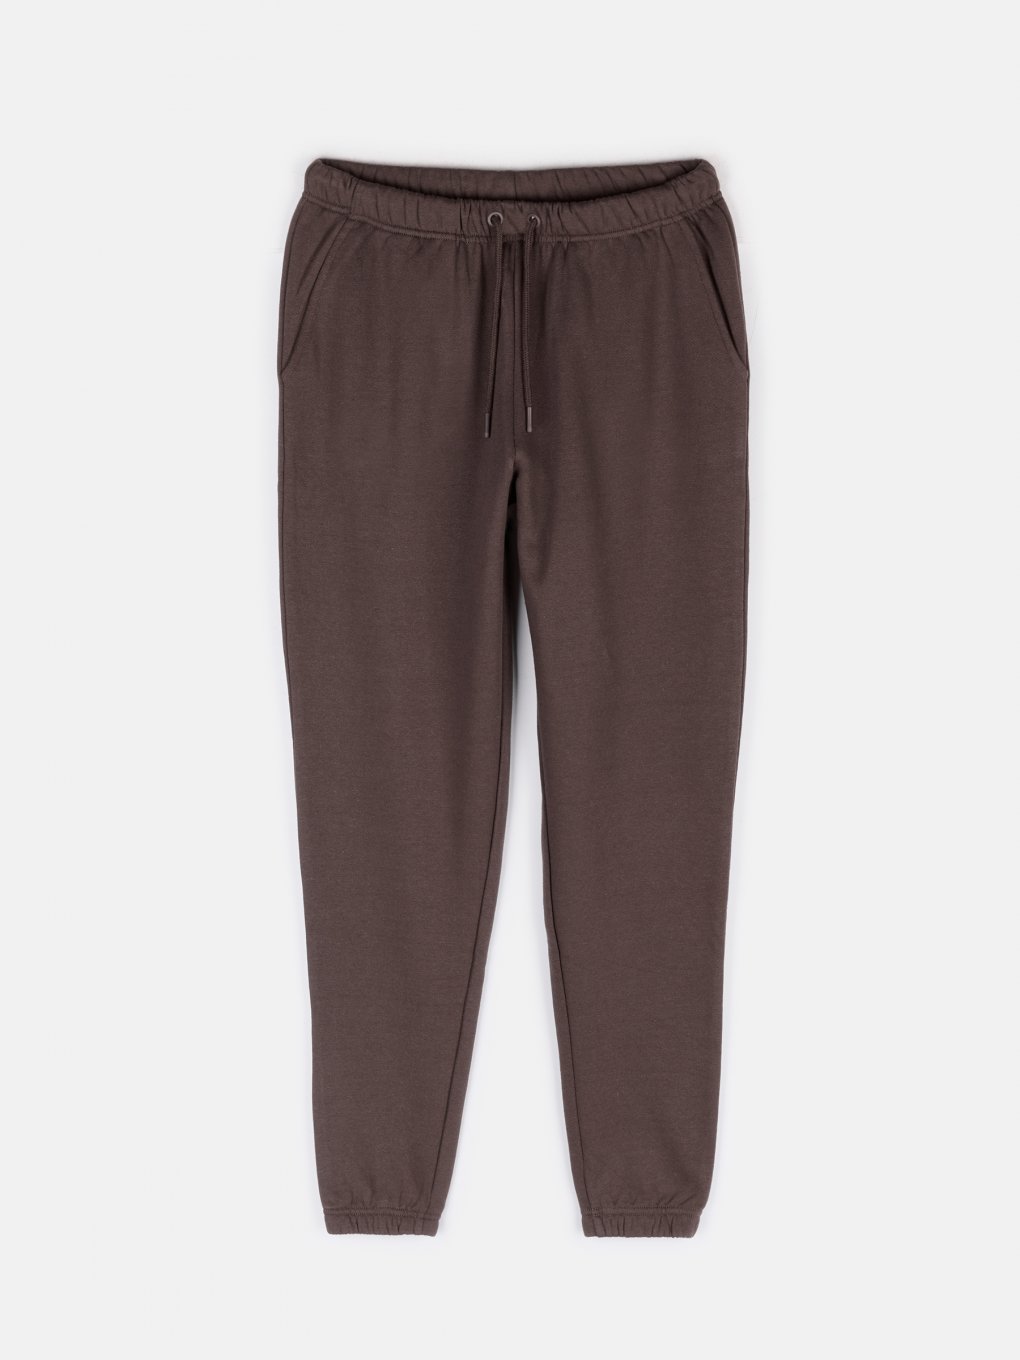 Basic oversize sweatpants with pockets